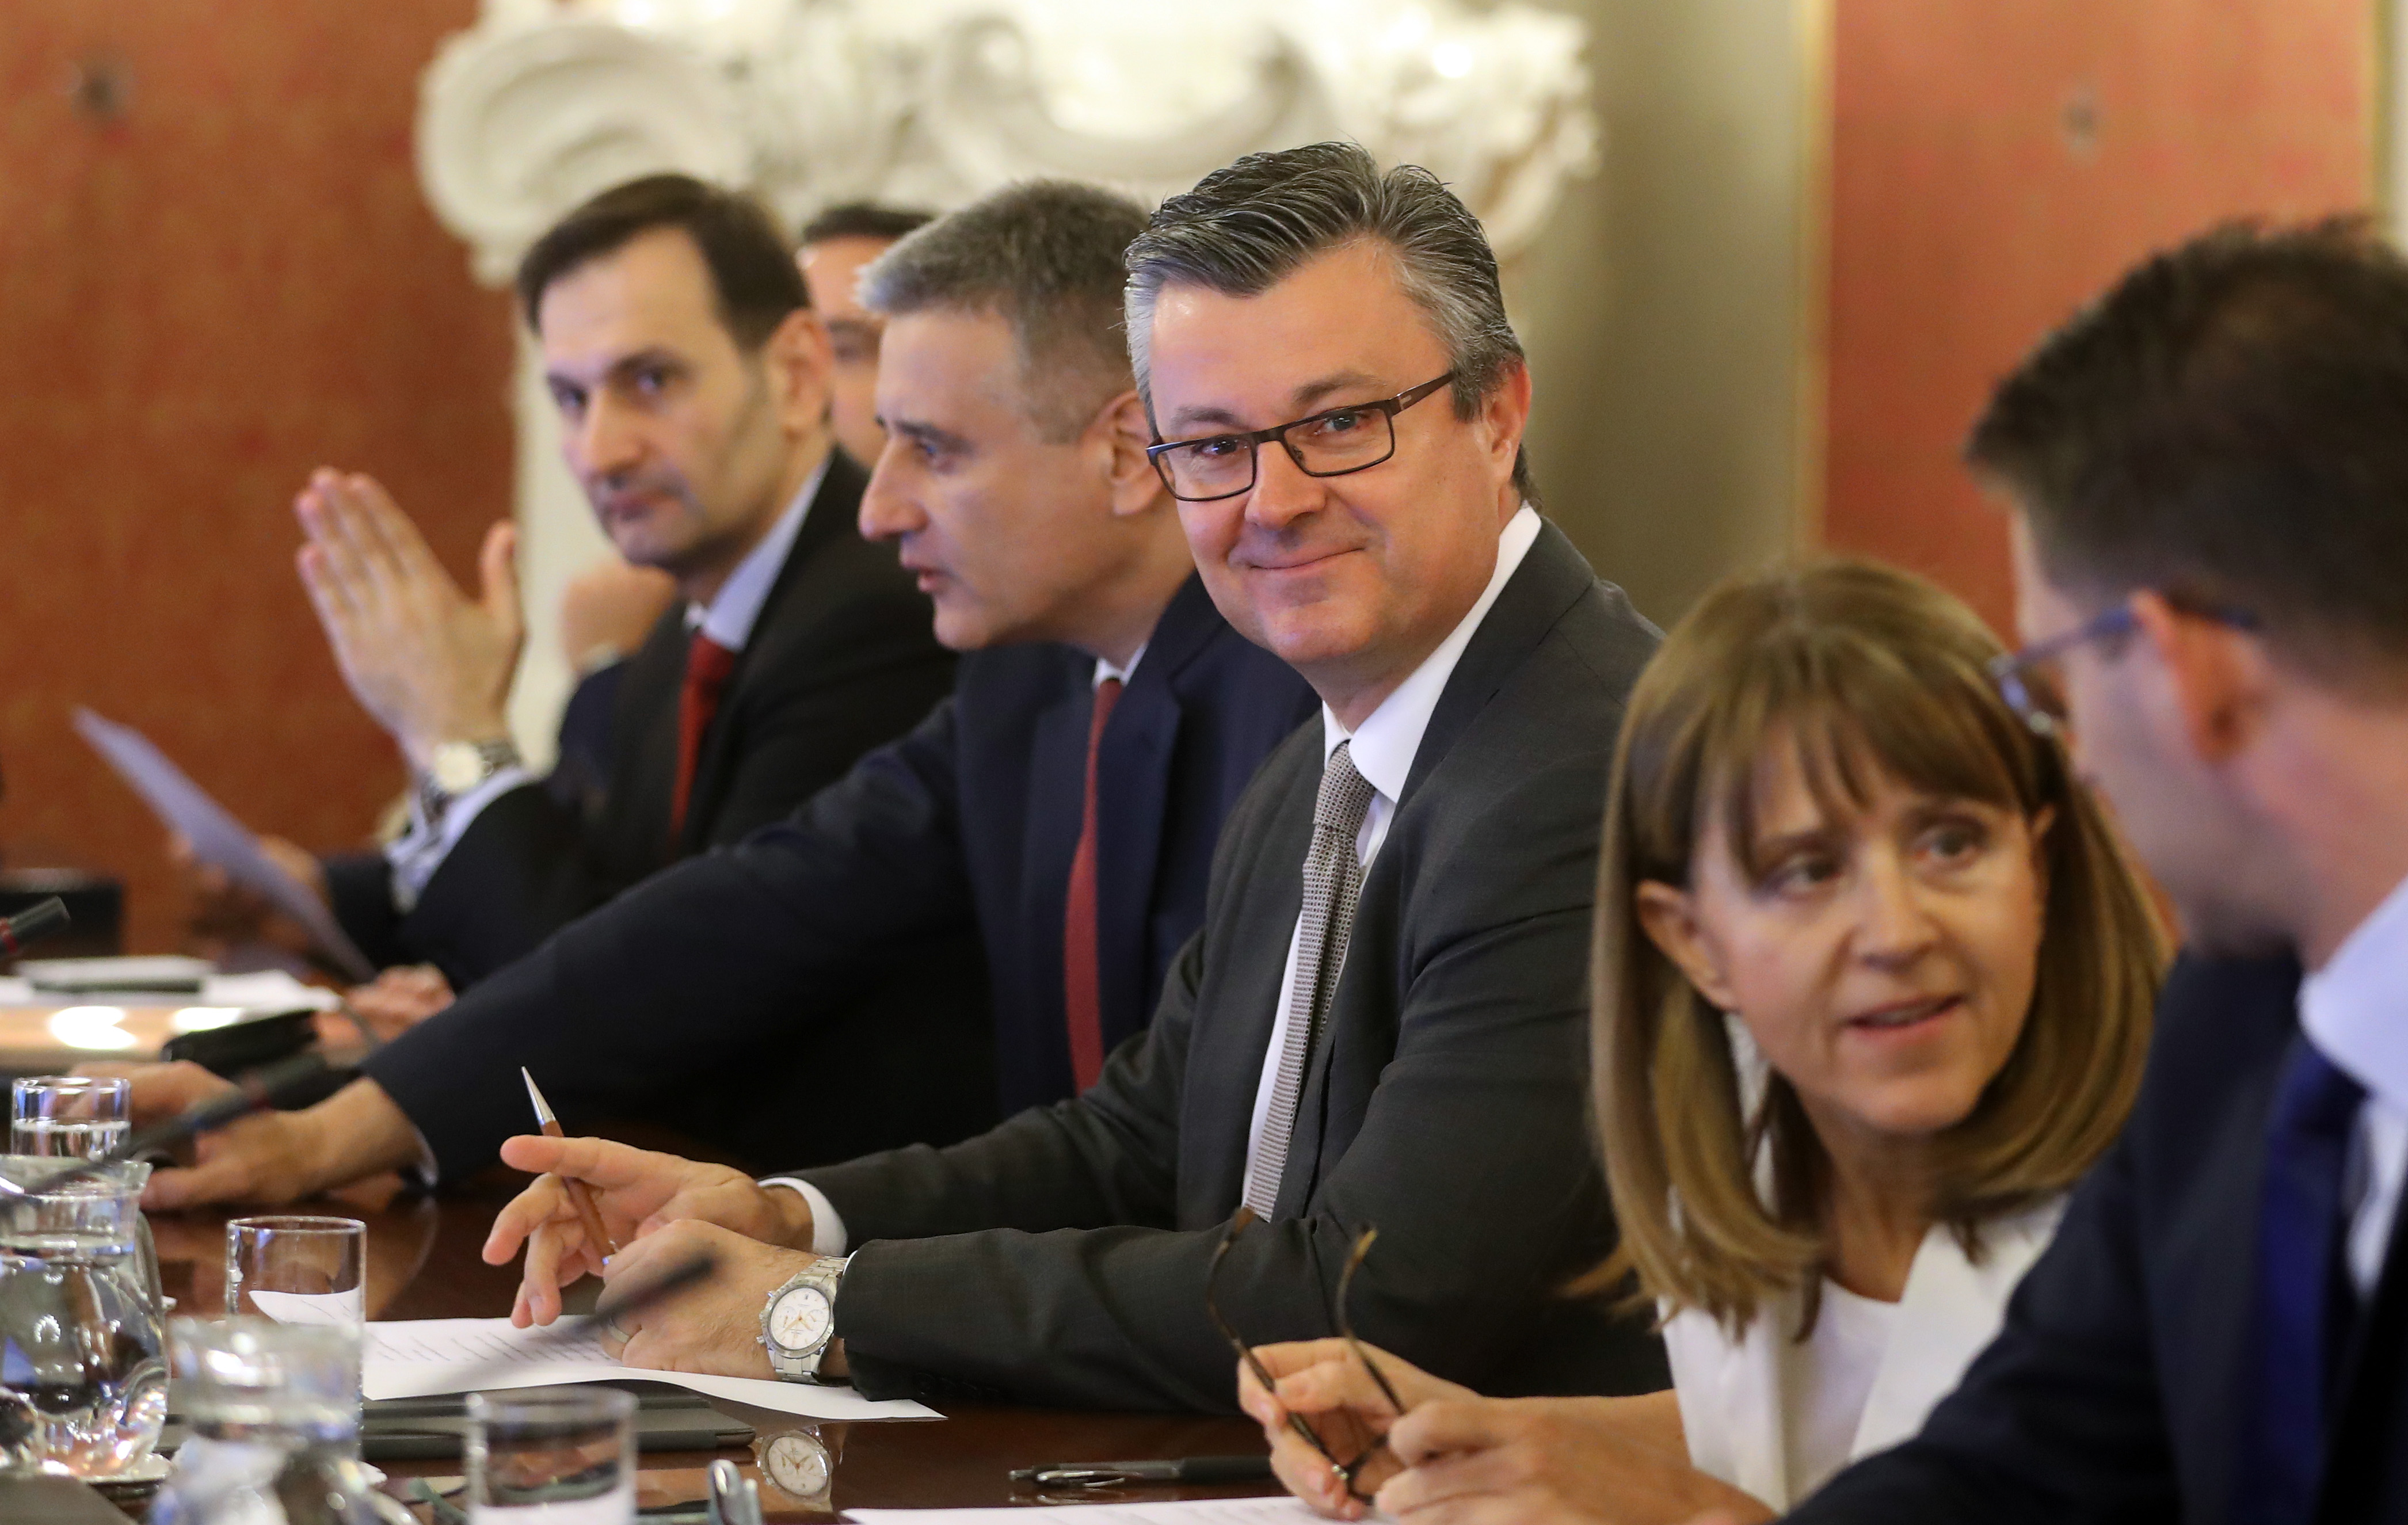 Ministri/ce i HDZ-a i Mosta složni/e: jednoglasno ubrzali rasprodaju zemlje